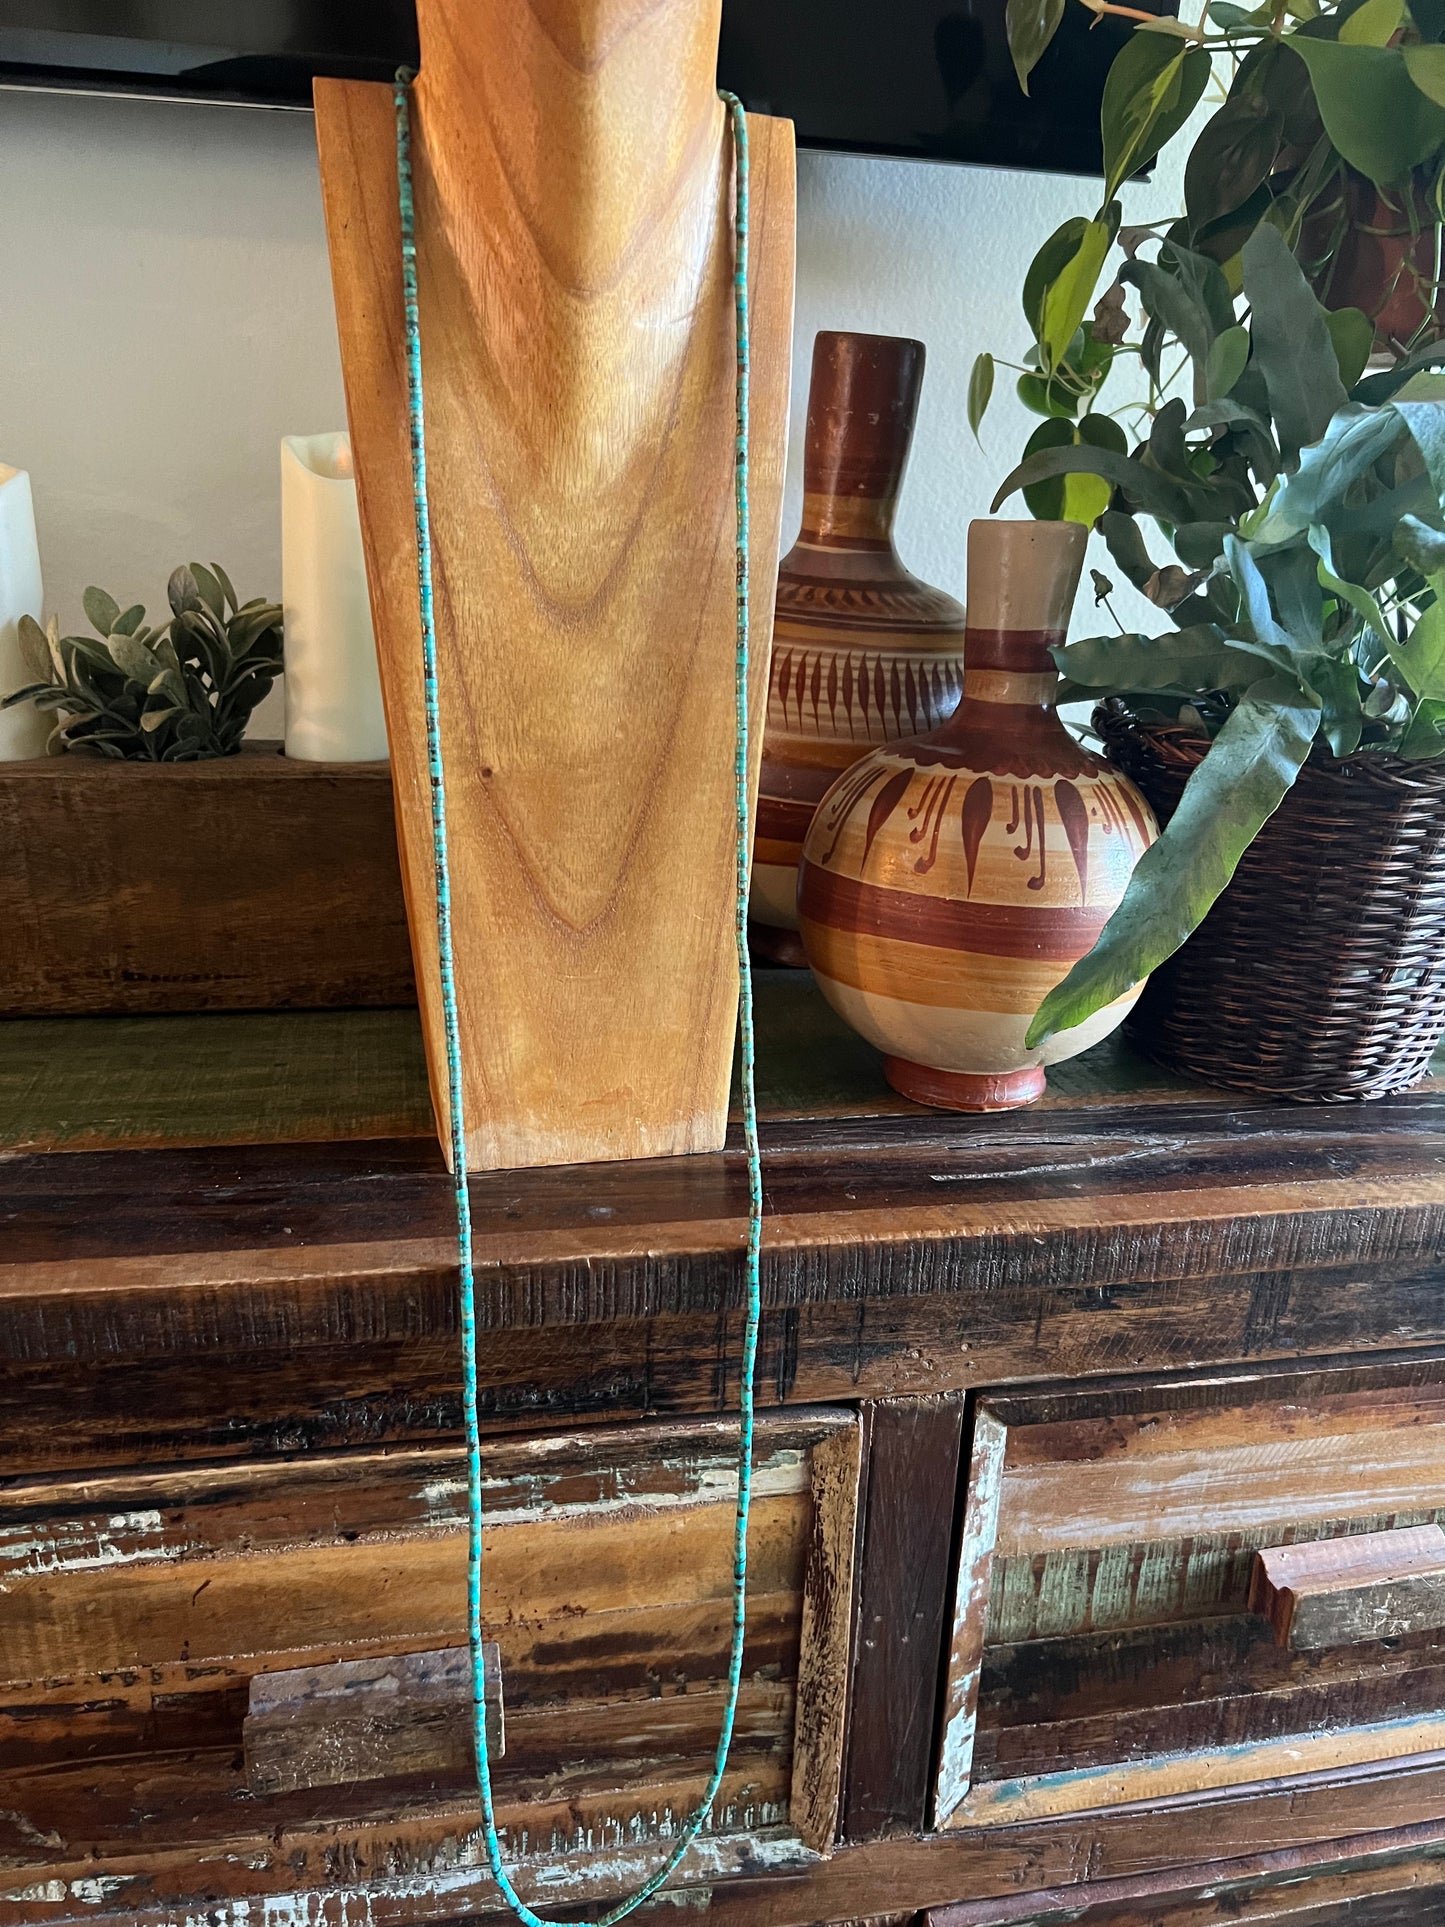 5 feet of Heshi Turquoise necklace